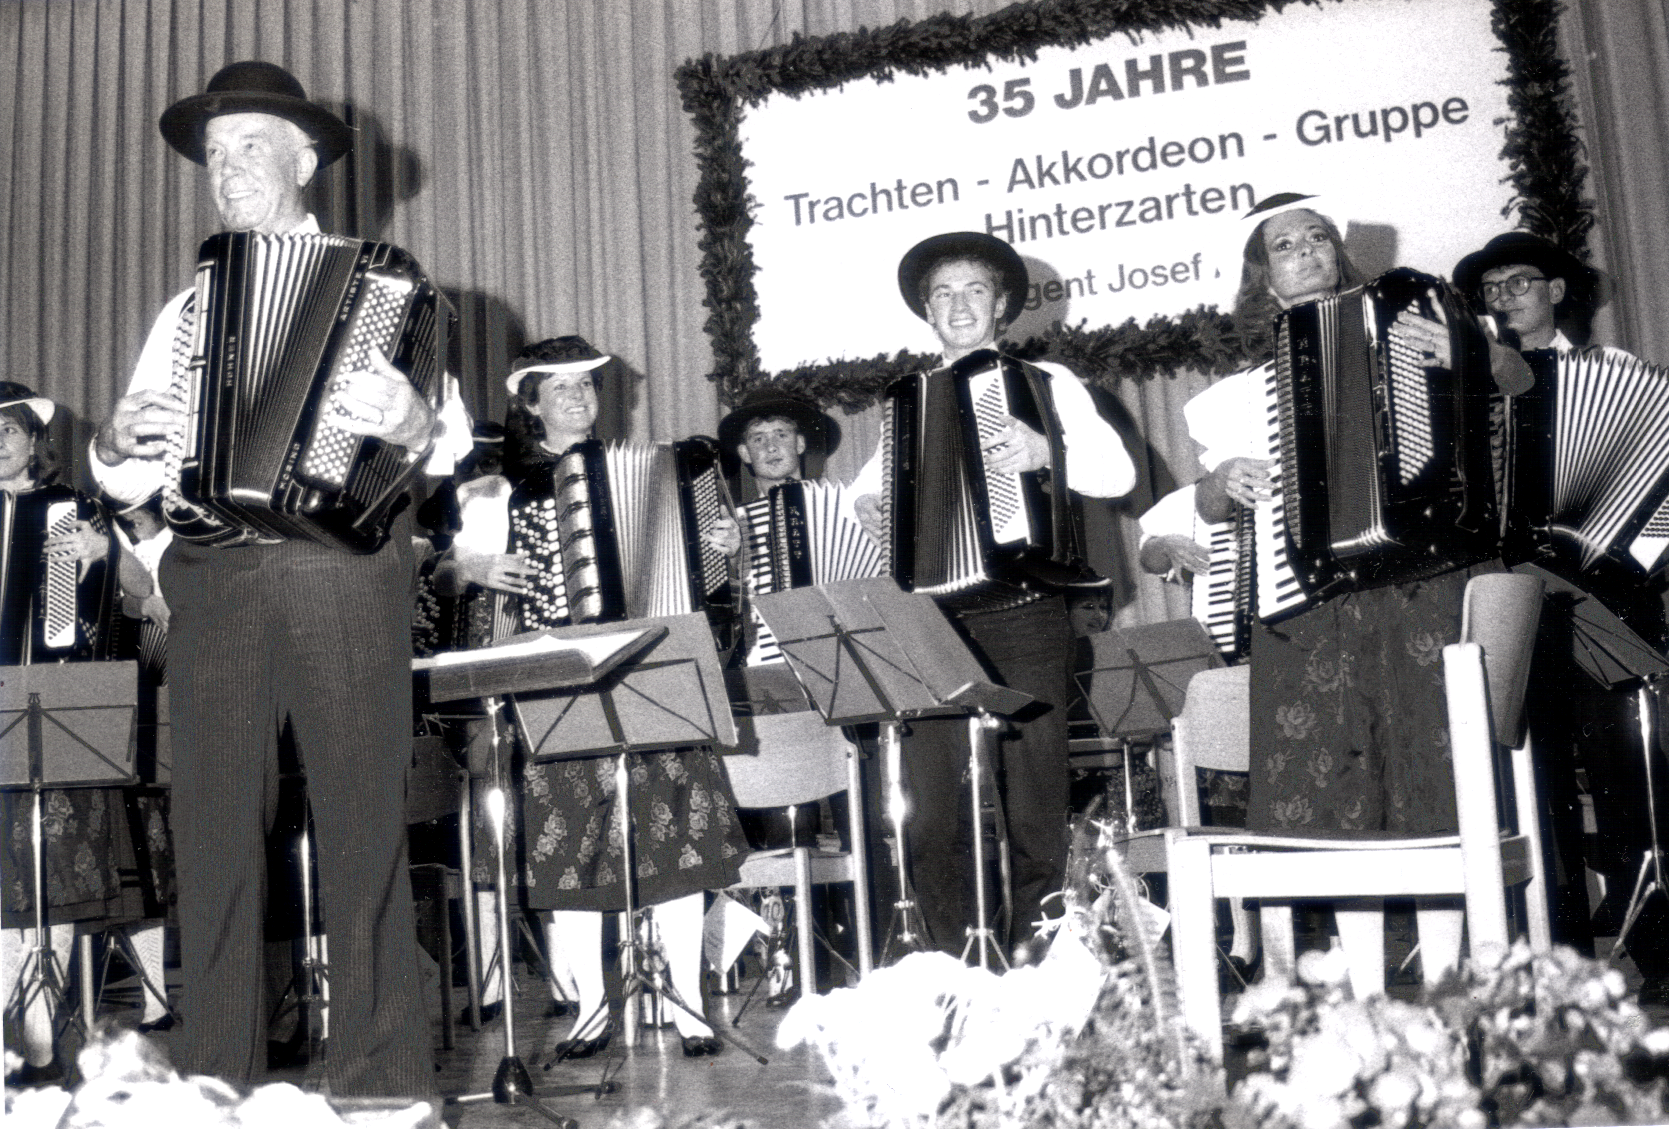 Dirigentenwechsel und Jubiläum 35 Jahre Trachten-Akkordeongruppe - Oktober 1991